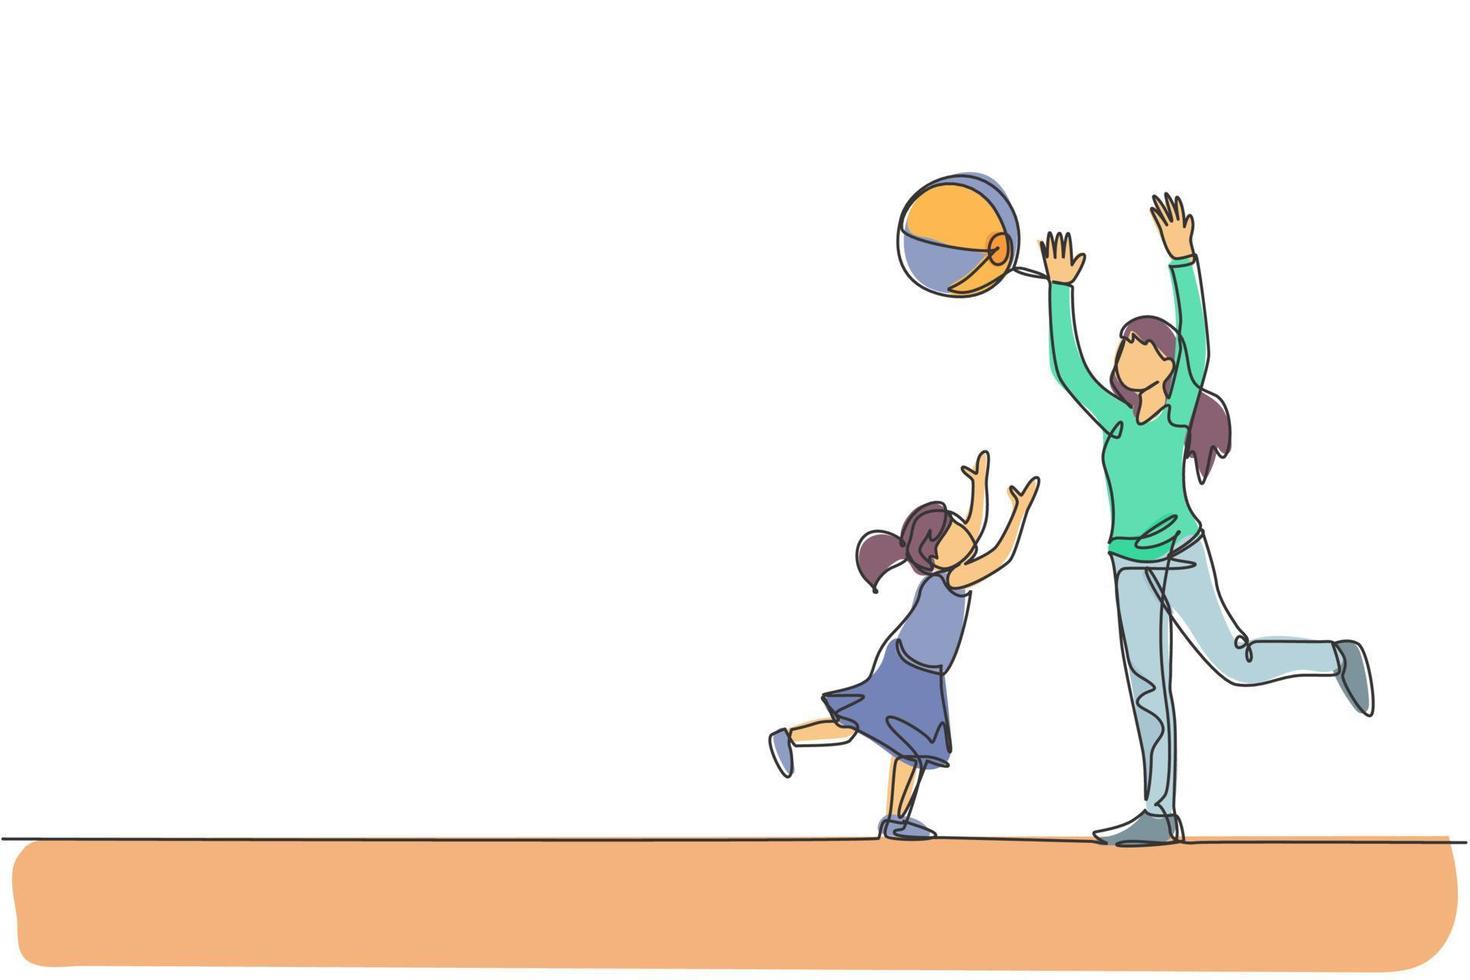 enda kontinuerlig linjeteckning av unga som spelar kastar strandboll med sin dotter hemma, lyckligt föräldraskap. familjälskande vårdkoncept. trendiga en linje rita grafisk design vektor illustration